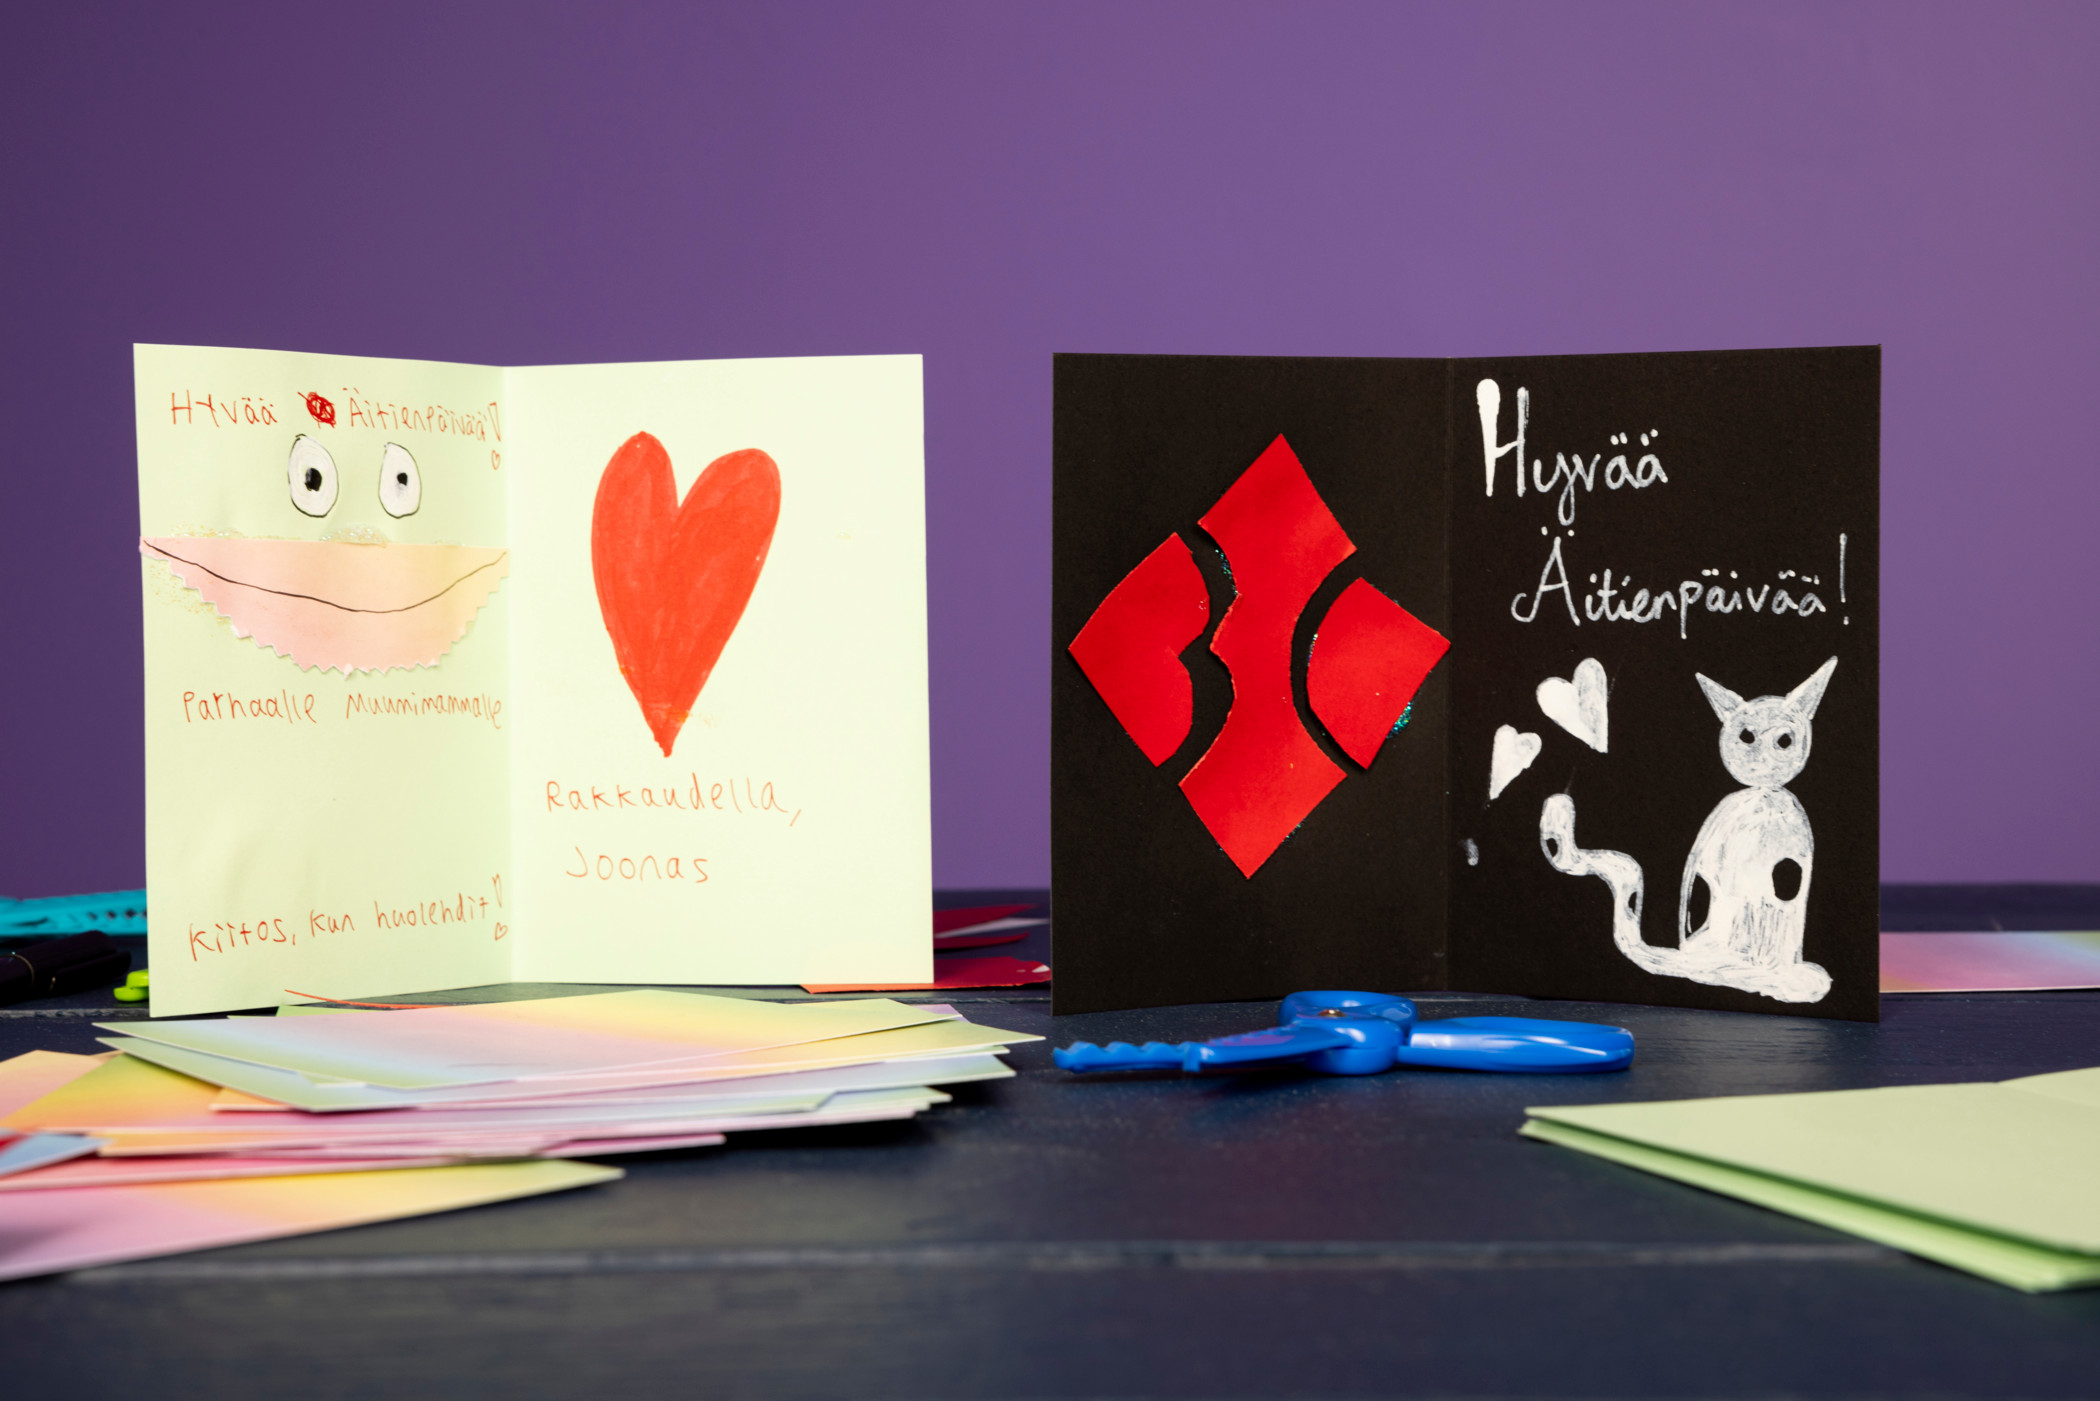 Blind Channel -muusikkojen valmiit kortit äideilleen. Joonaksen kortti on vaaleanvihreä ja siinä on punainen sydän. Kortissa lukee "Hyvää äitienpäivää parhaalle Muumimammalle. Kiitos kun huolehdit! Rakkaudella, Joonas." Nikon kortti on musta ja siinä on BC-logo sekä Rommi-kissa. Kortissa lukee "Hyvää äitienpäivää!"